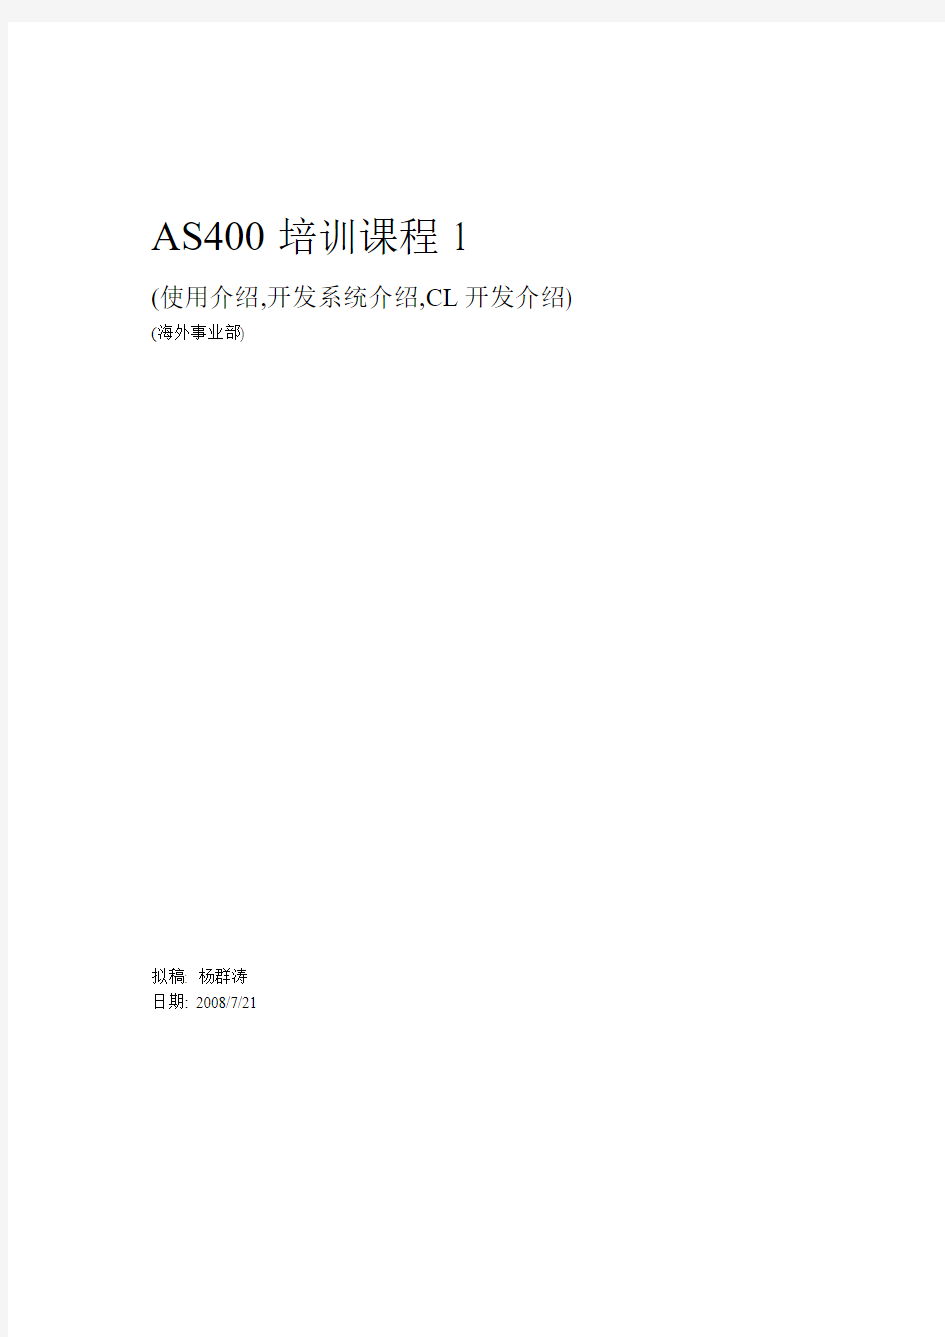 AS400培训 课程1(使用介绍,开发系统介绍,CL开发介绍)